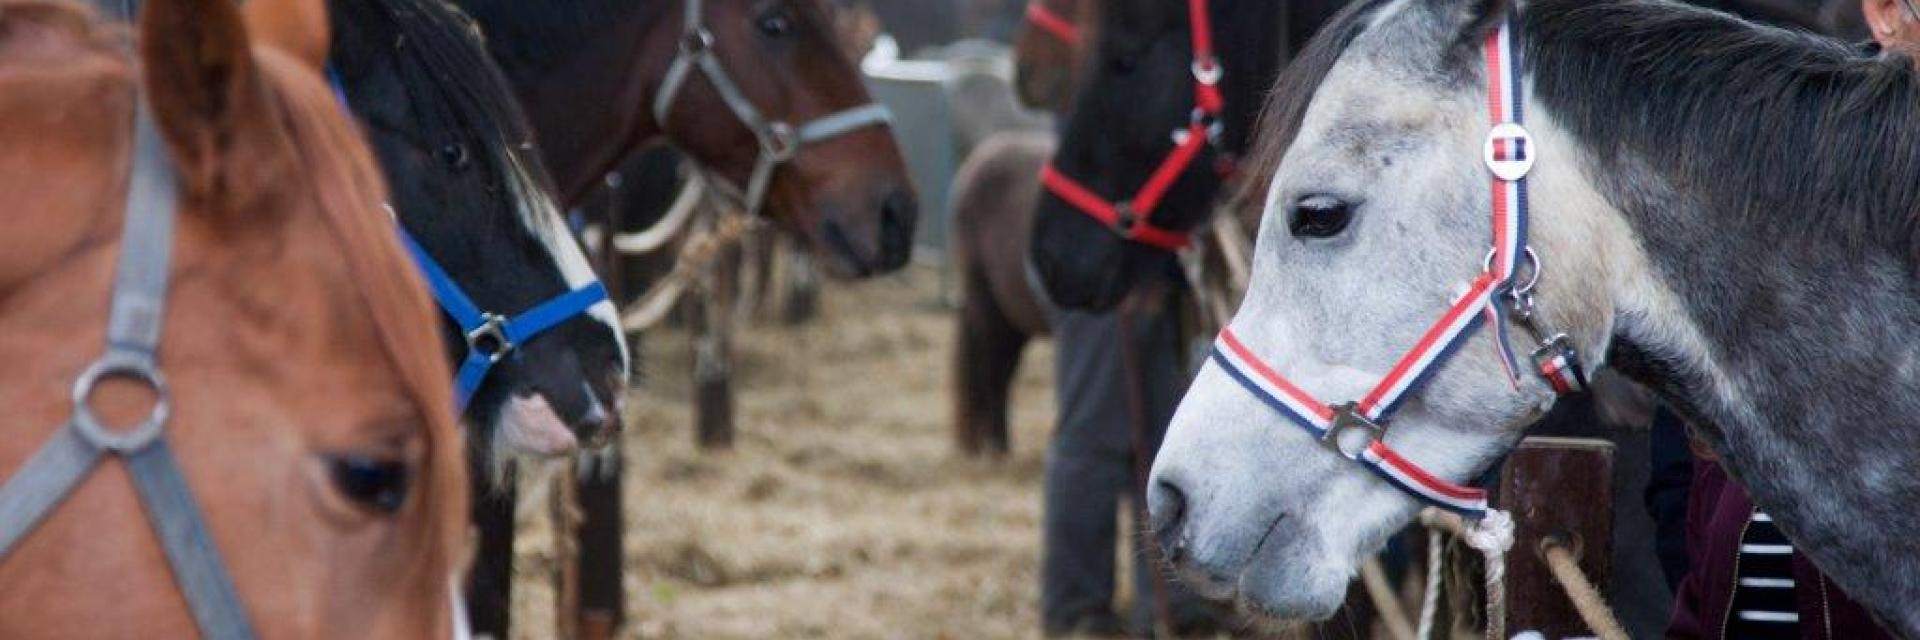 paarden op de zuidlaardermarkt